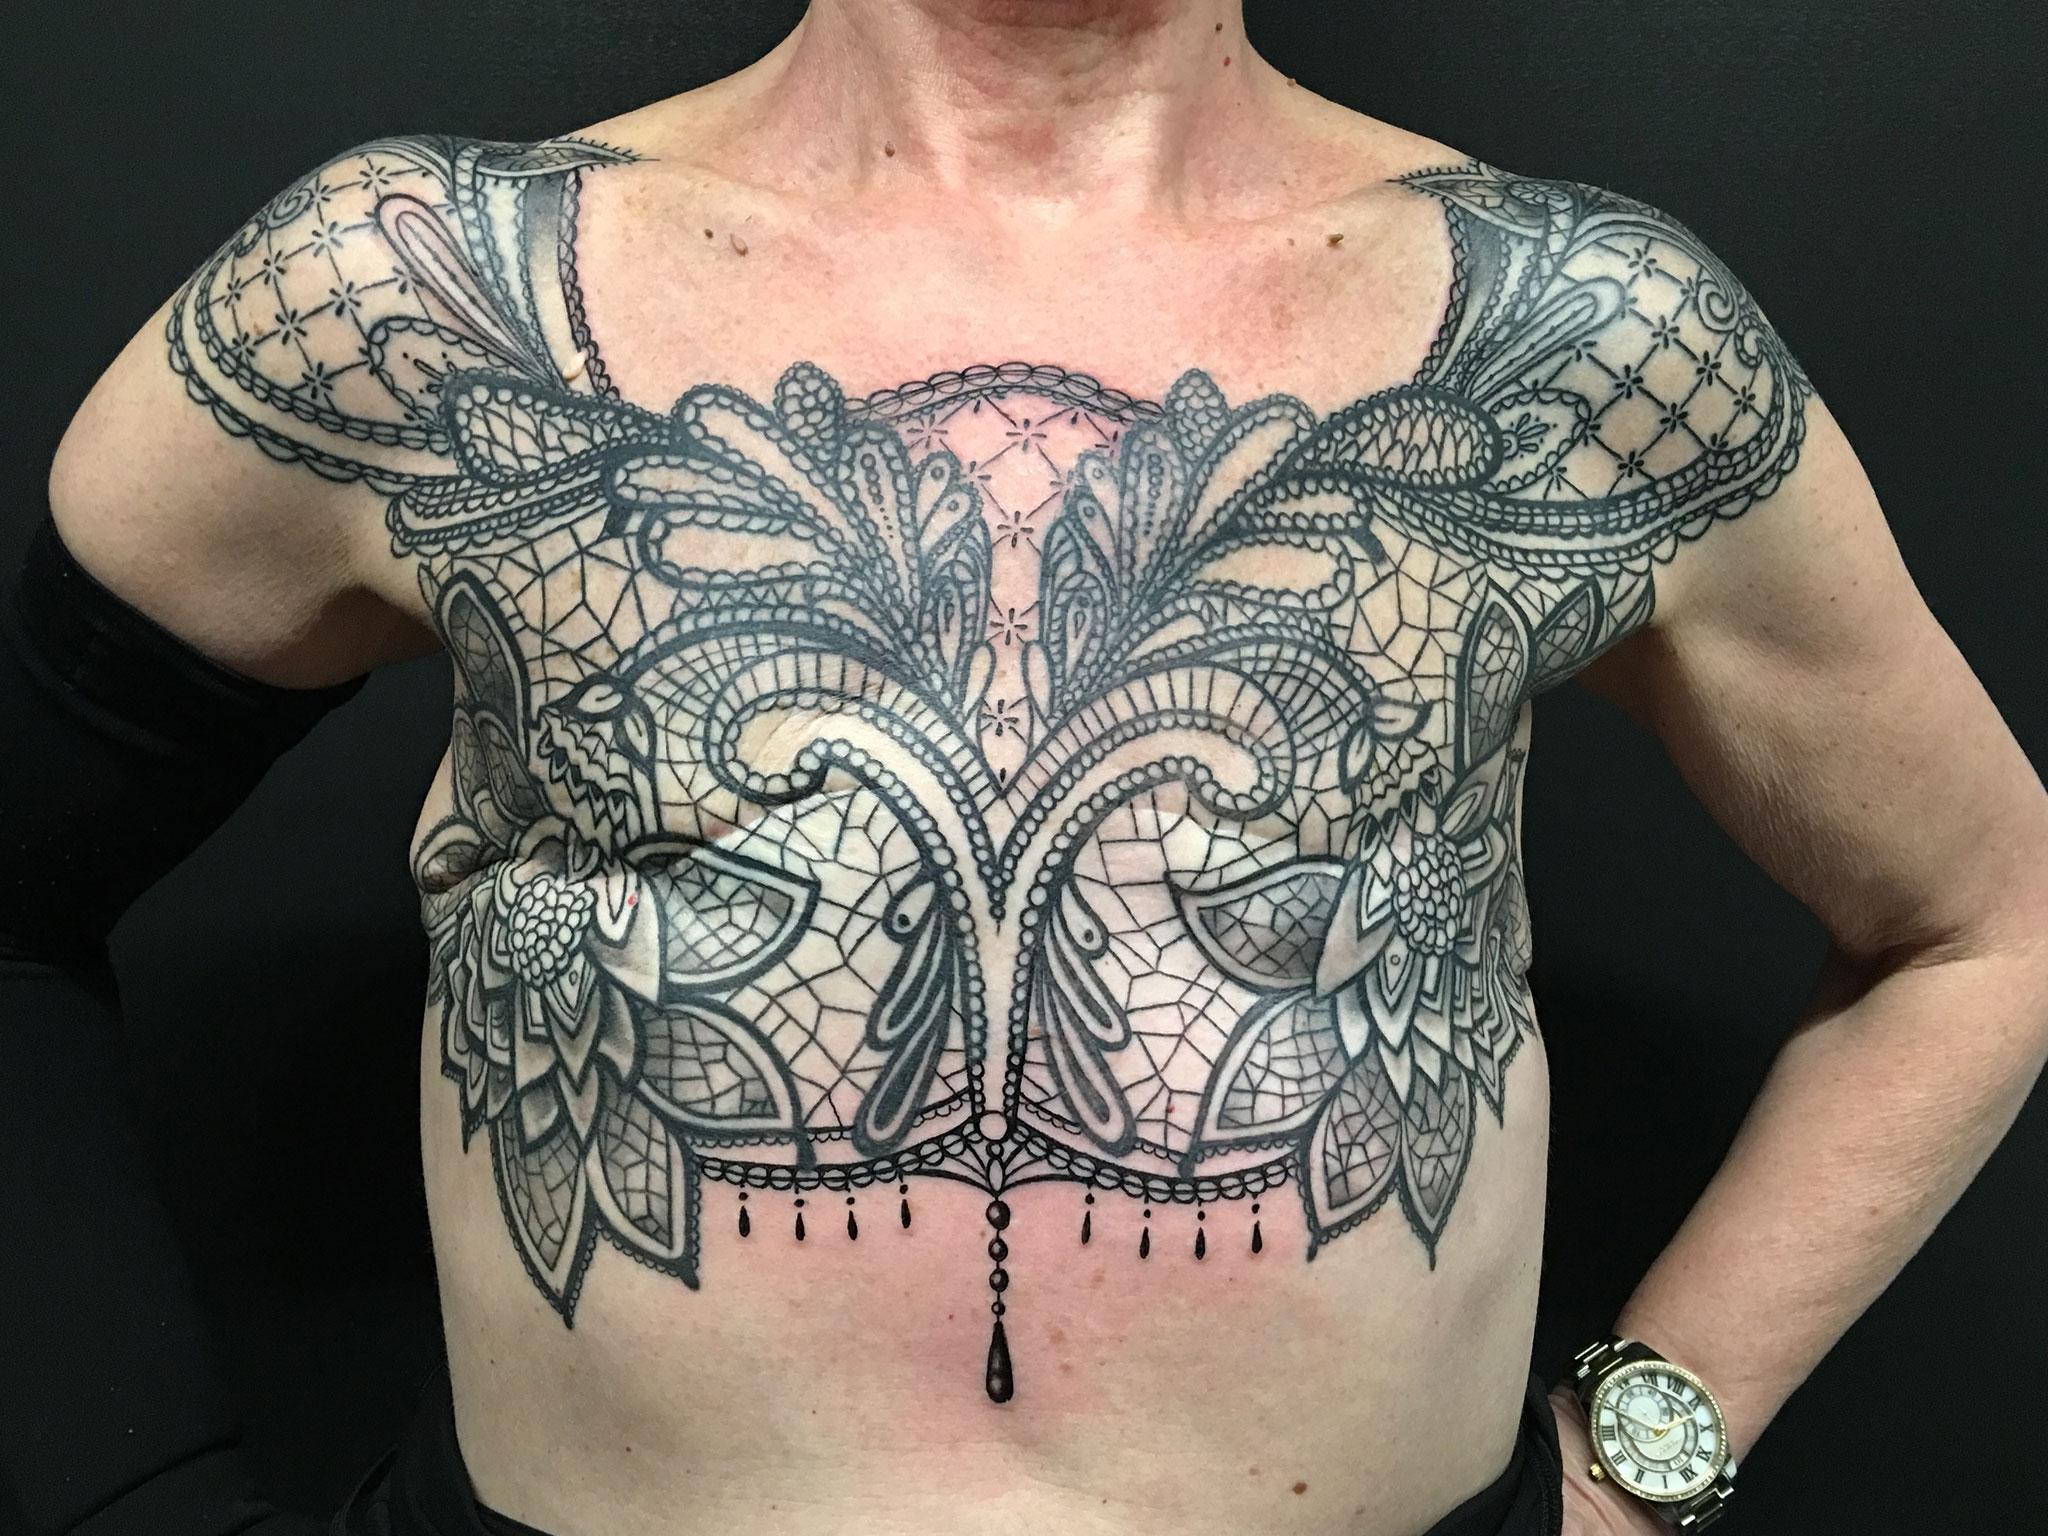 Sue Cook's tattoo took 30 hours to create